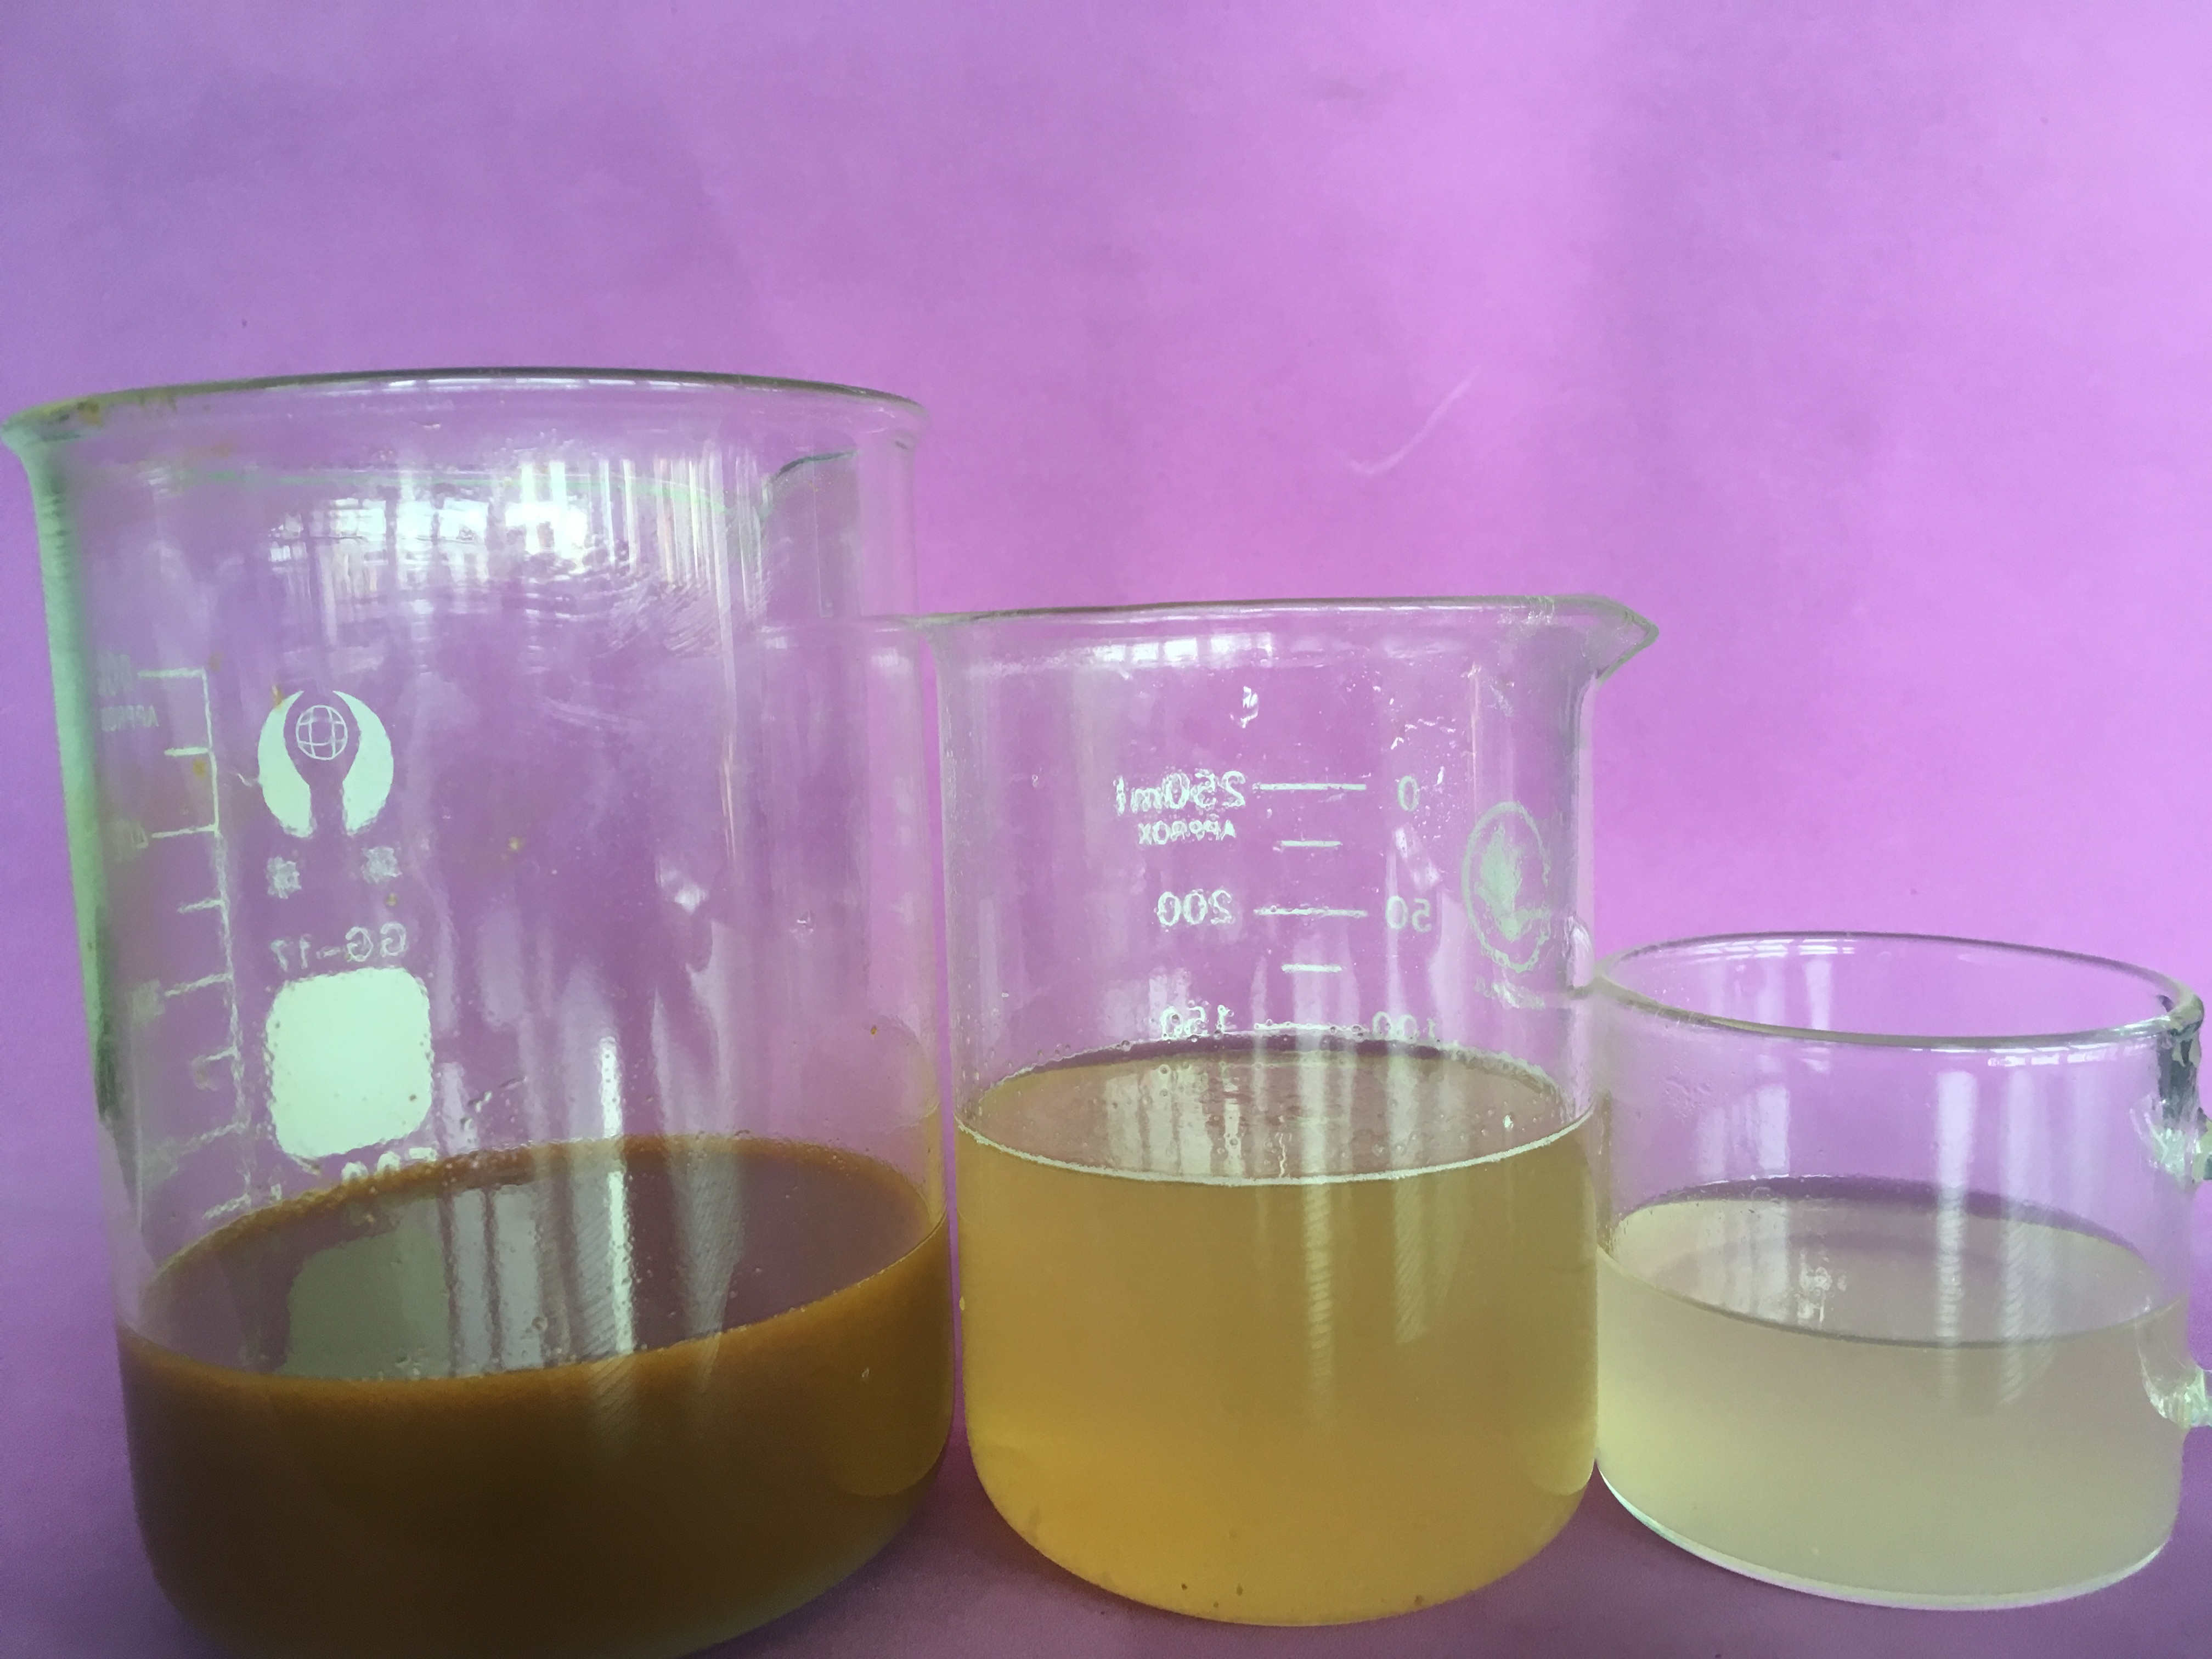 Хлорид полиалюминия представляет собой бесцветное или светло-желтое твердое вещество. При растворении в воде может образовывать мутный раствор.